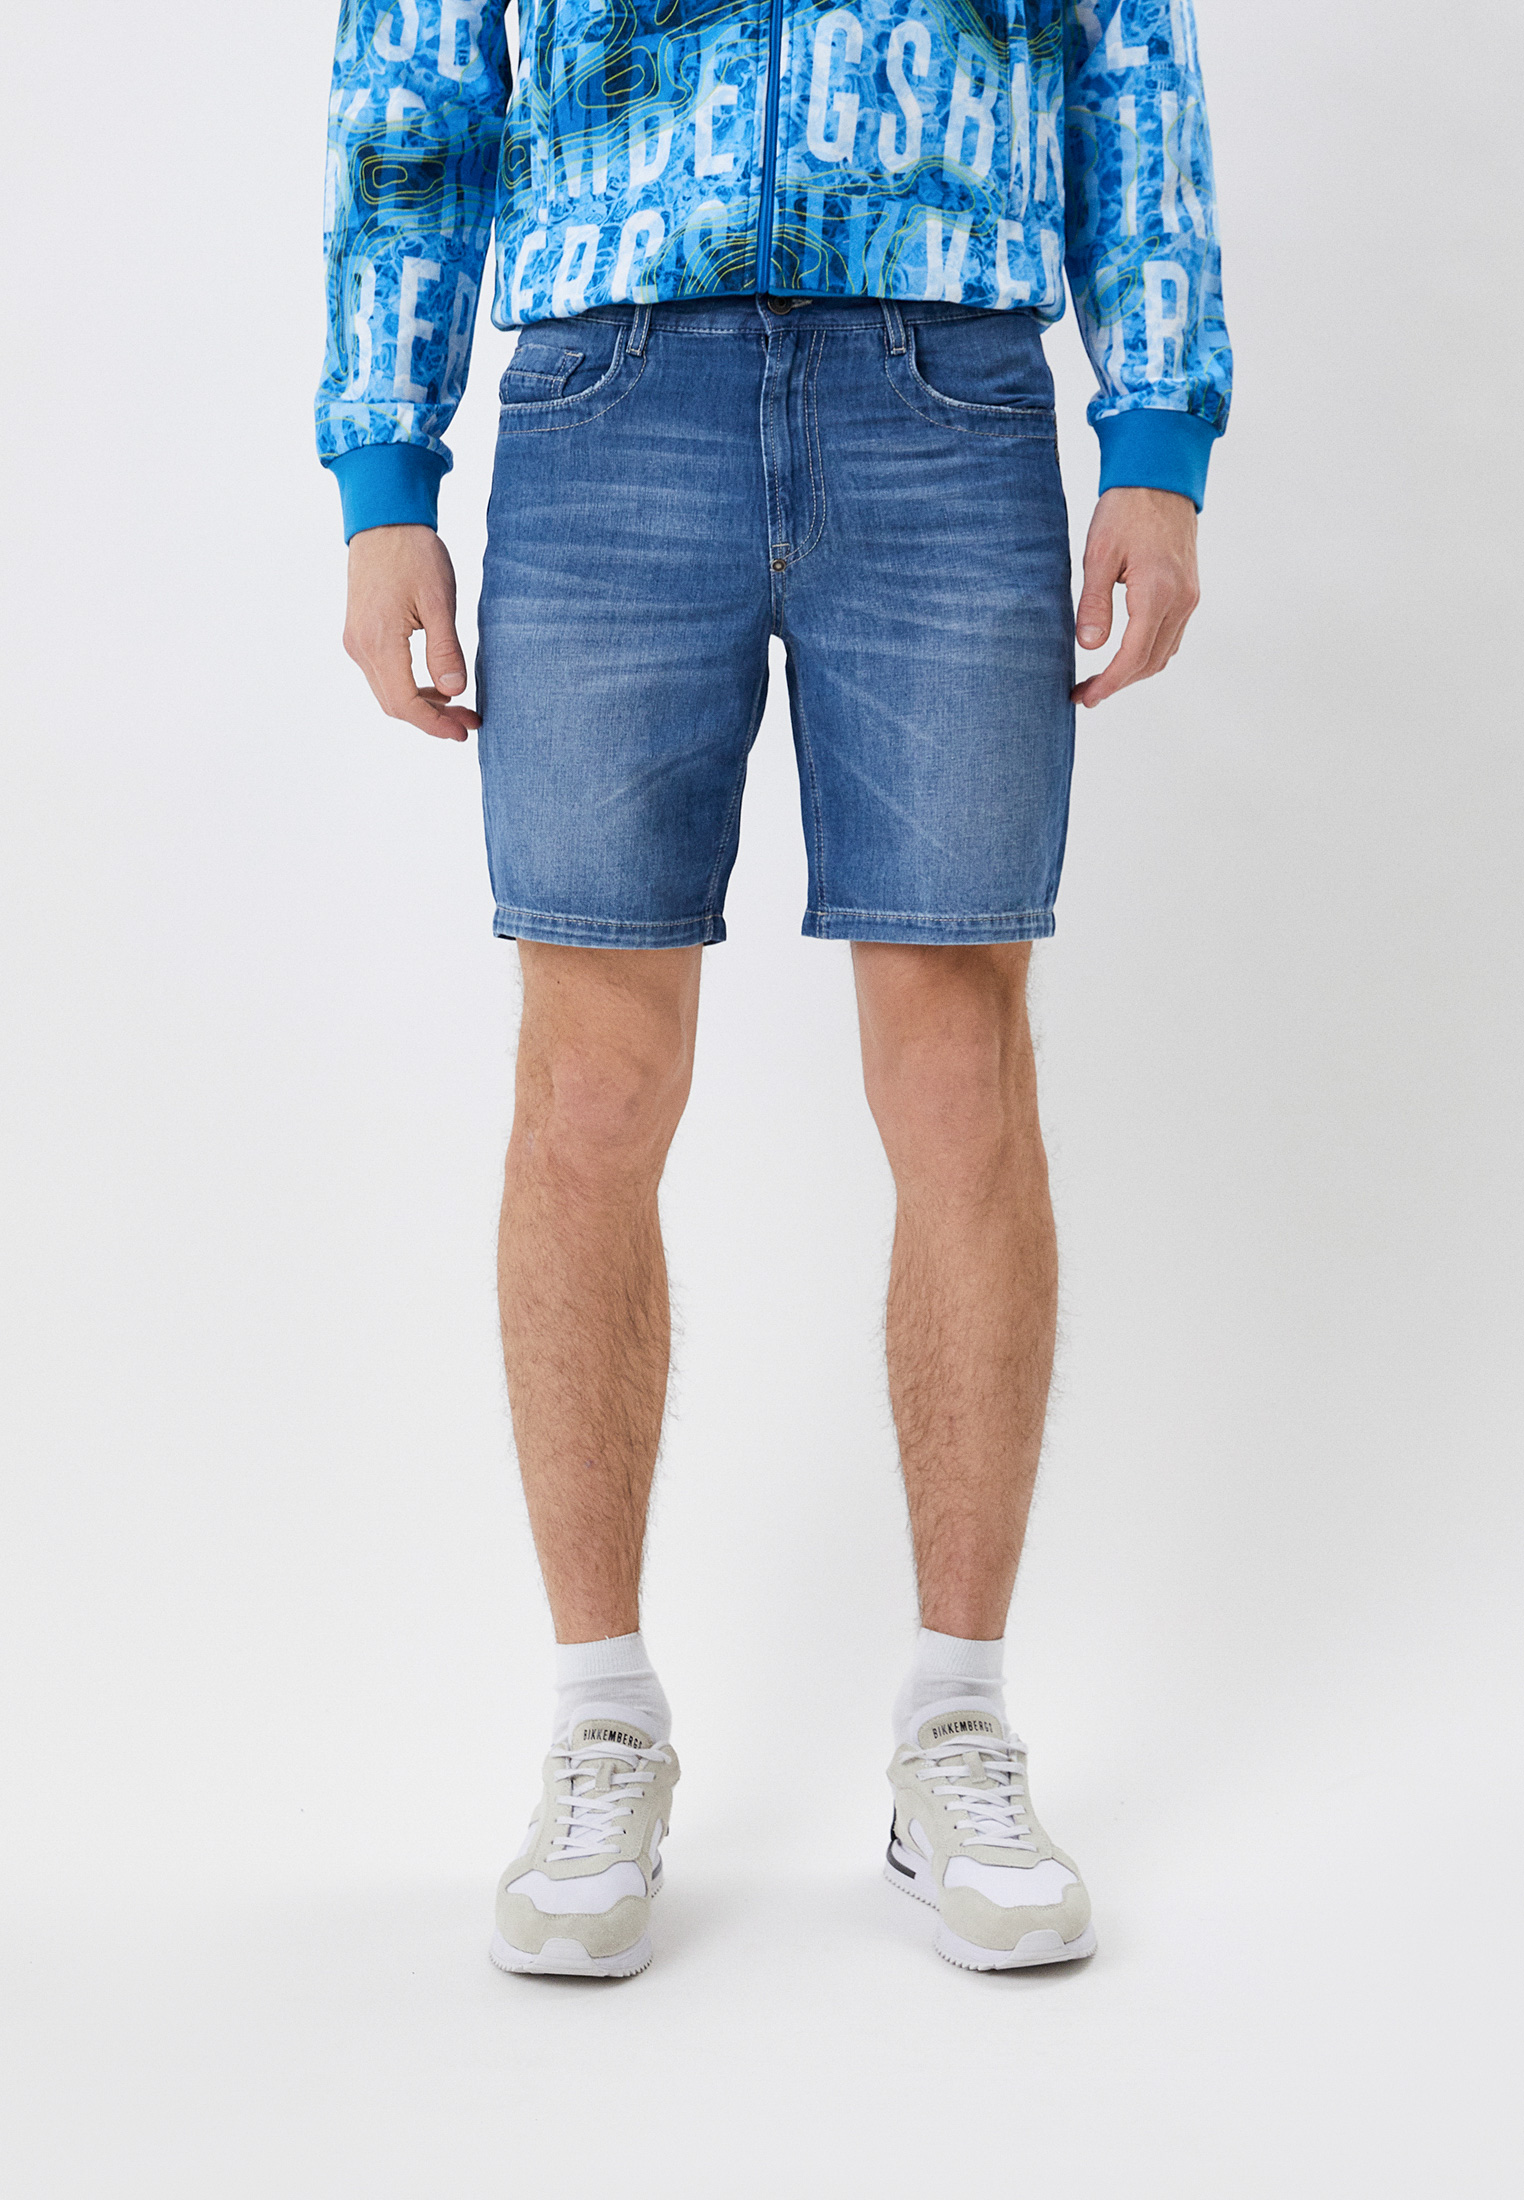 Мужские джинсовые шорты Bikkembergs (Биккембергс) CO03102T117A: изображение 1